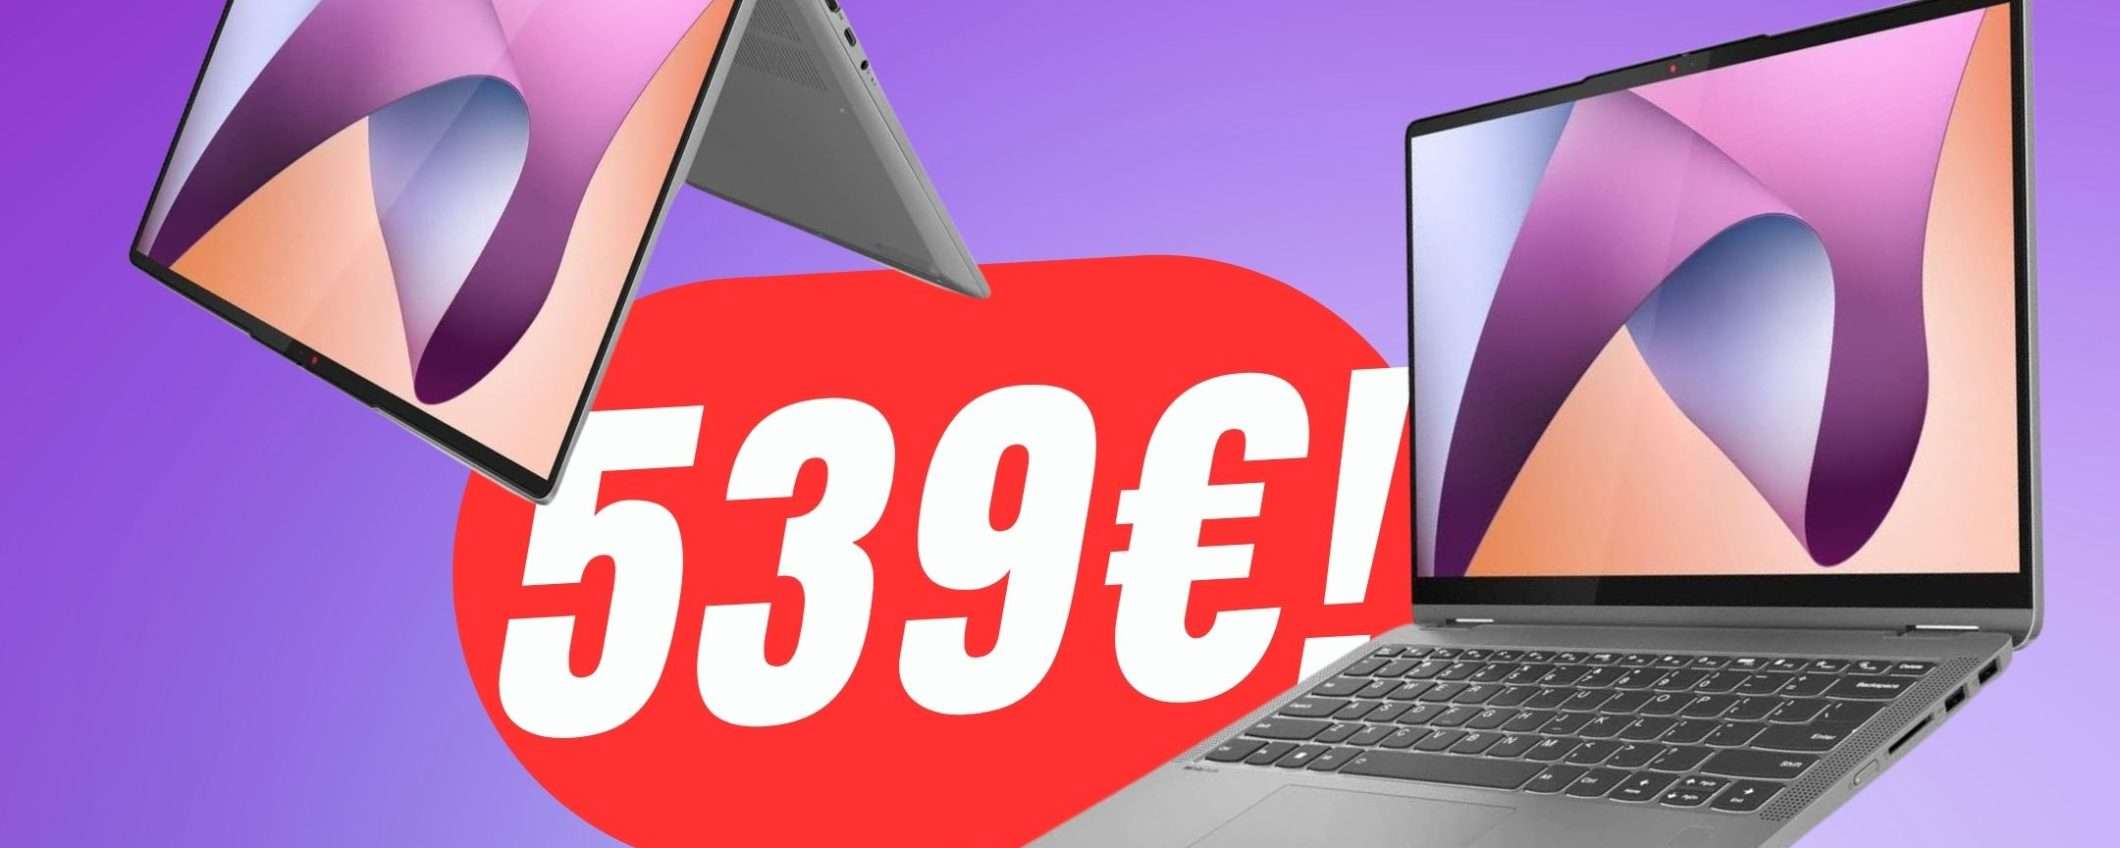 Lenovo IdeaPad Flex 5 è il Notebook Trasformabile dei tuoi sogni a soli 539€!